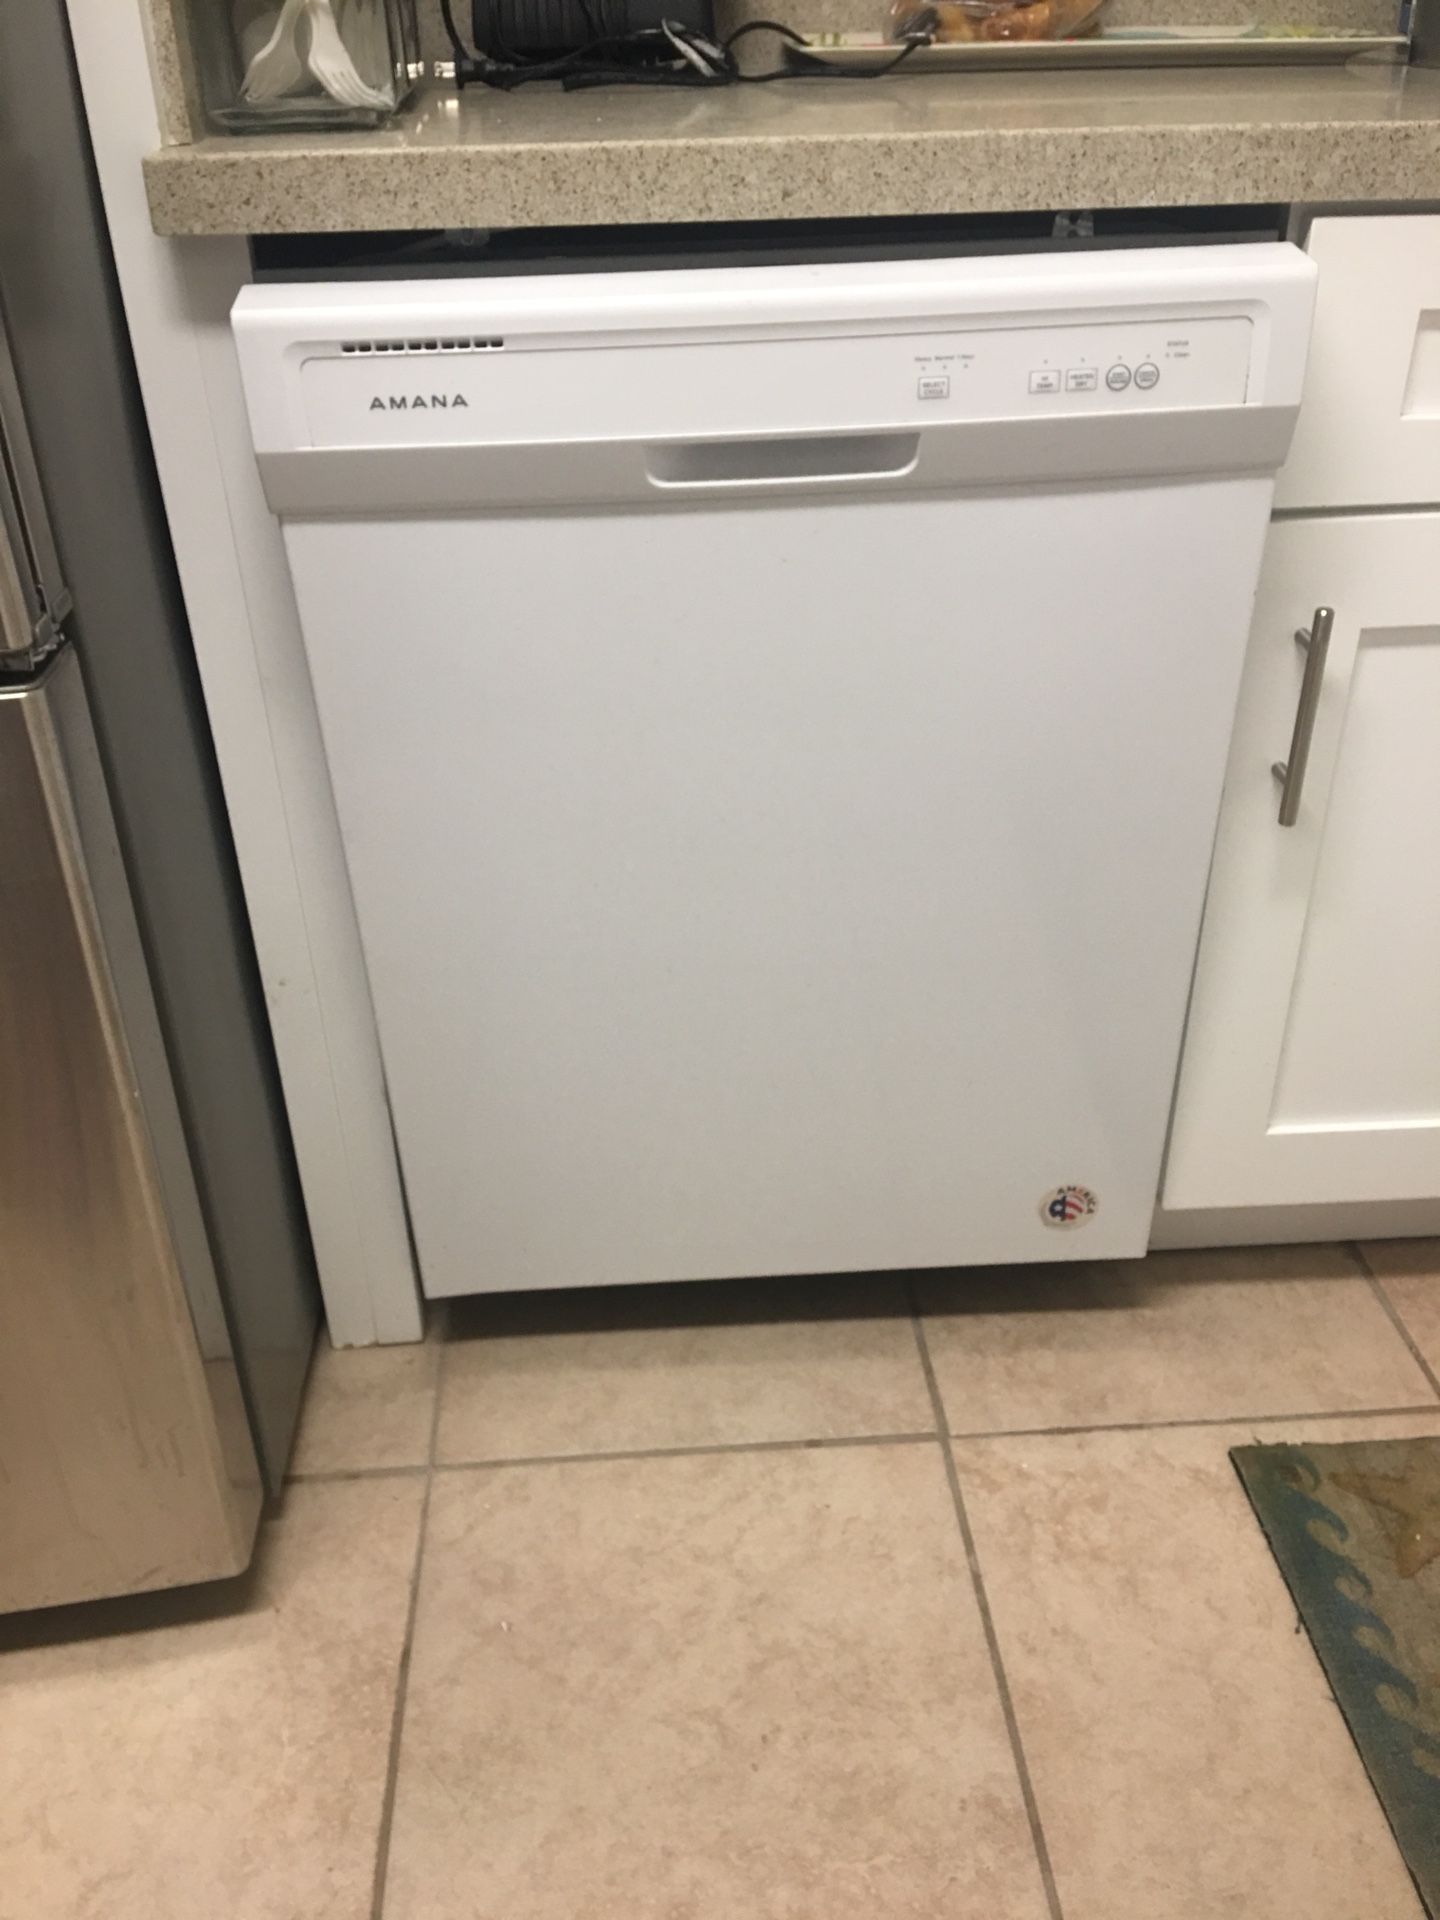 NEW! Dishwasher